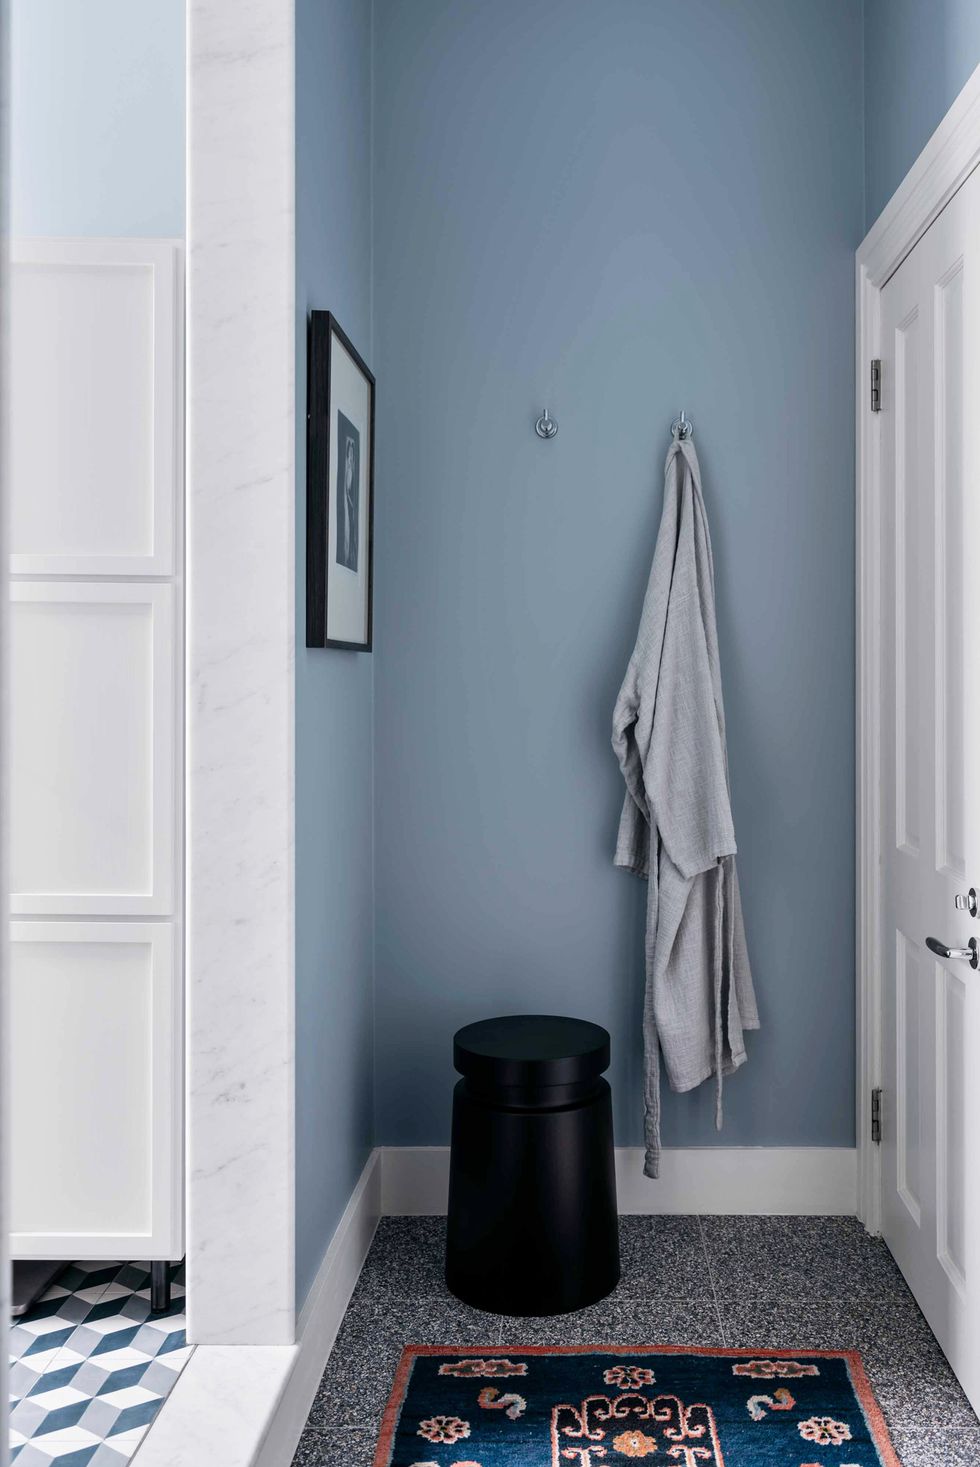 Tập trung vào các chi tiết ý tưởng phòng tắm thân thiện với gia đình ẢNH: FELIX FORET; THIẾT KẾ: ARENT & PYKE Ngay cả một thứ đơn giản như treo một chiếc áo choàng cũng có thể tạo nên sự khác biệt. Như đã thấy trong phòng tắm được thiết kế bởi Arent & Pyke này, nó làm cho không gian có cảm giác sống động hơn. Tấm thảm nhỏ theo phong cách Trang trí Nghệ thuật cũng tôn lên tông màu xanh lam xuyên suốt trong khi giới thiệu hoa văn và một chút san hô.